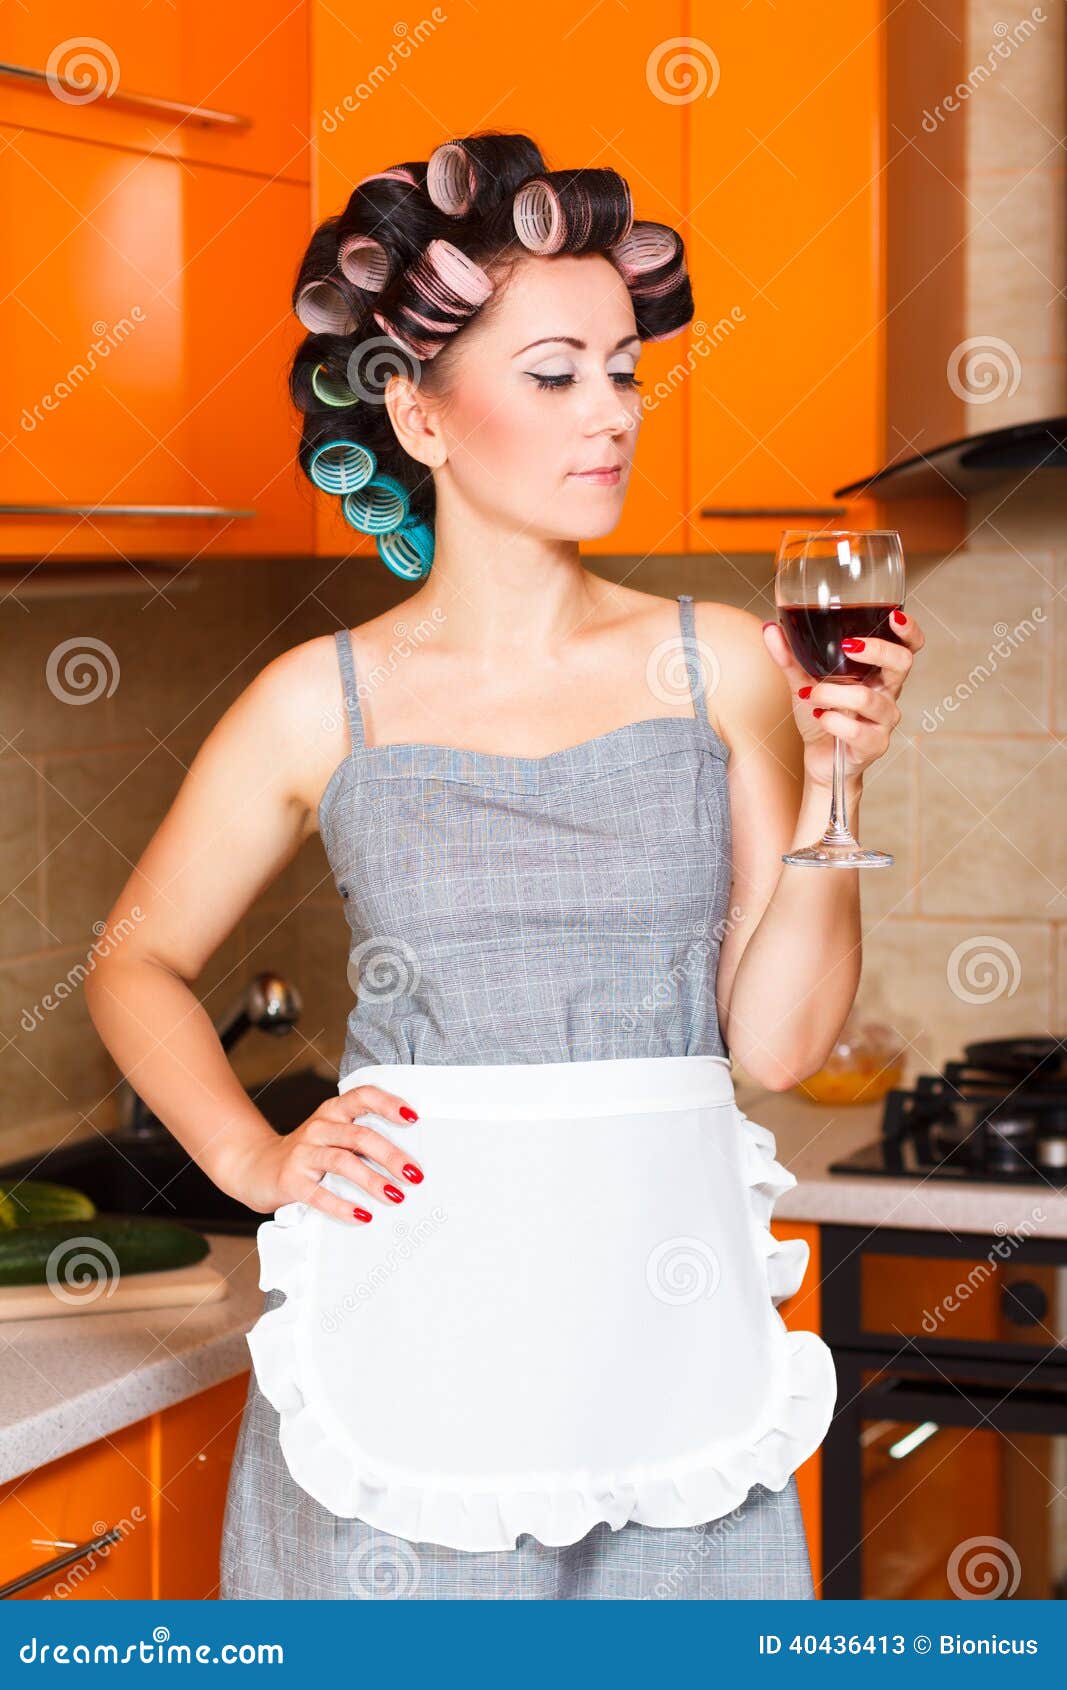 Соседская тетя. Домохозяйка в бигудях. Женщина в бигудях на кухне. Женщина домохозяйка в бигудях. Фотосессия на кухне в бигудях.